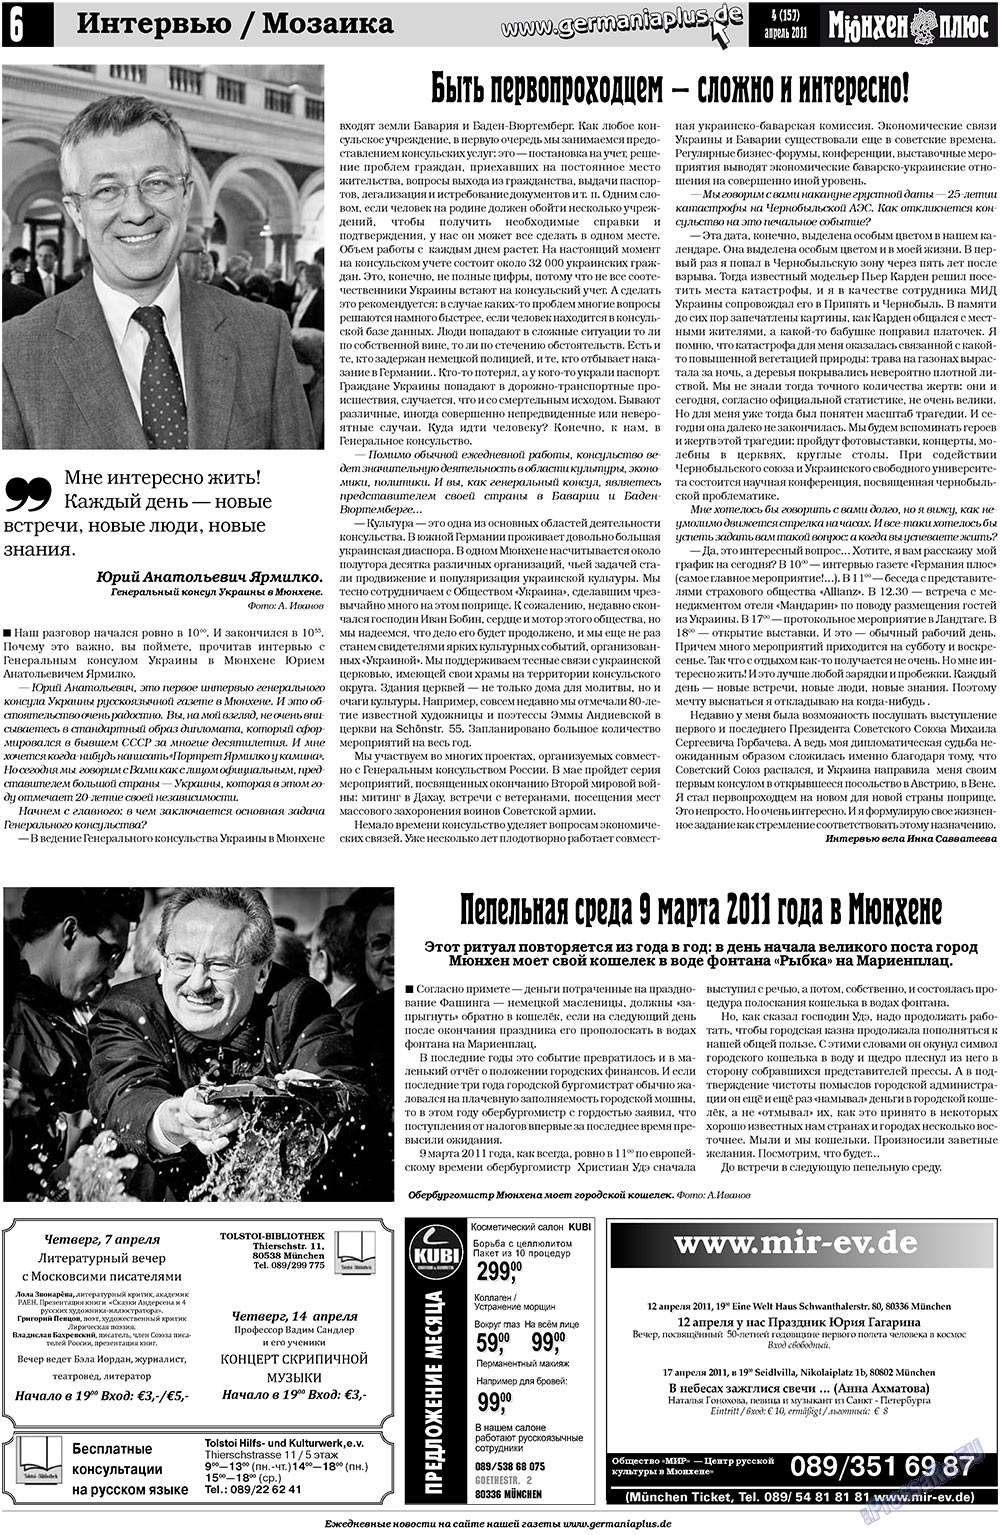 Германия плюс, газета. 2011 №4 стр.6